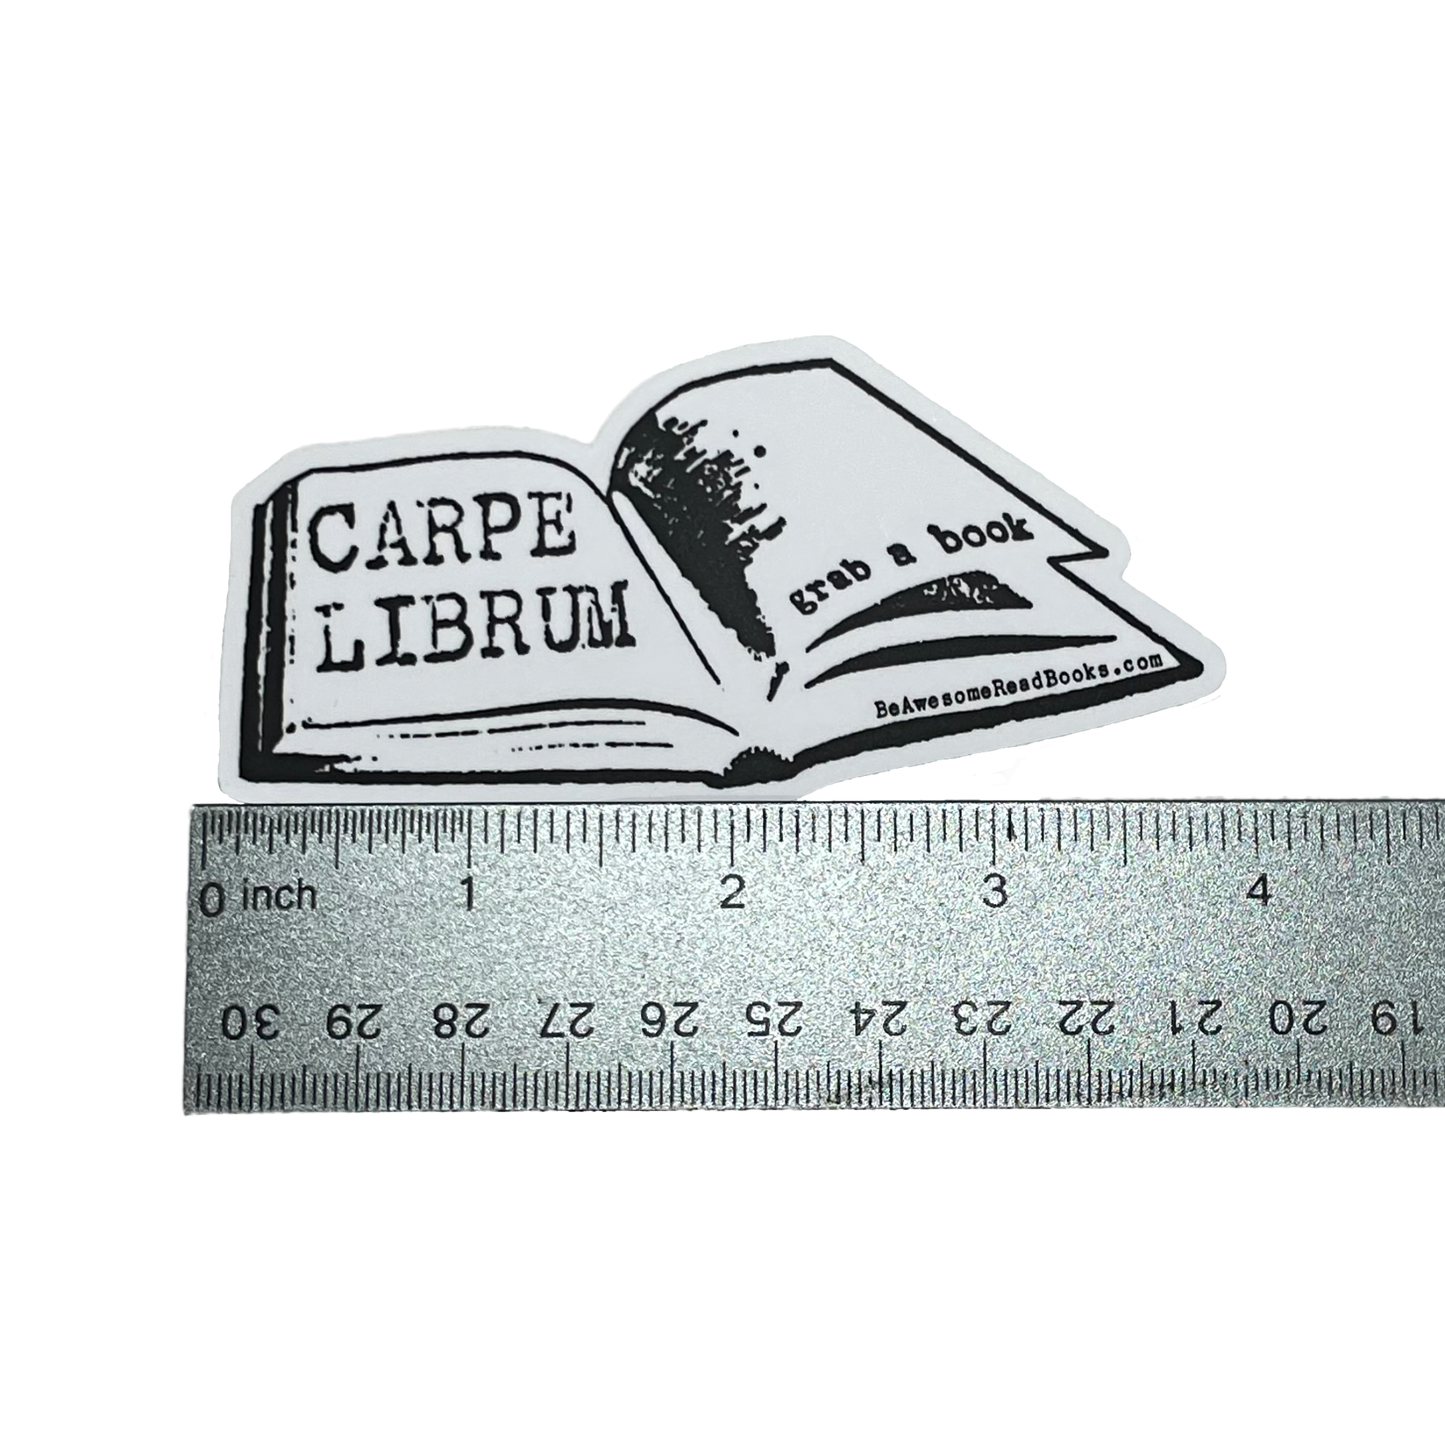 Carpe Librum Die Cut Book Logo Sticker